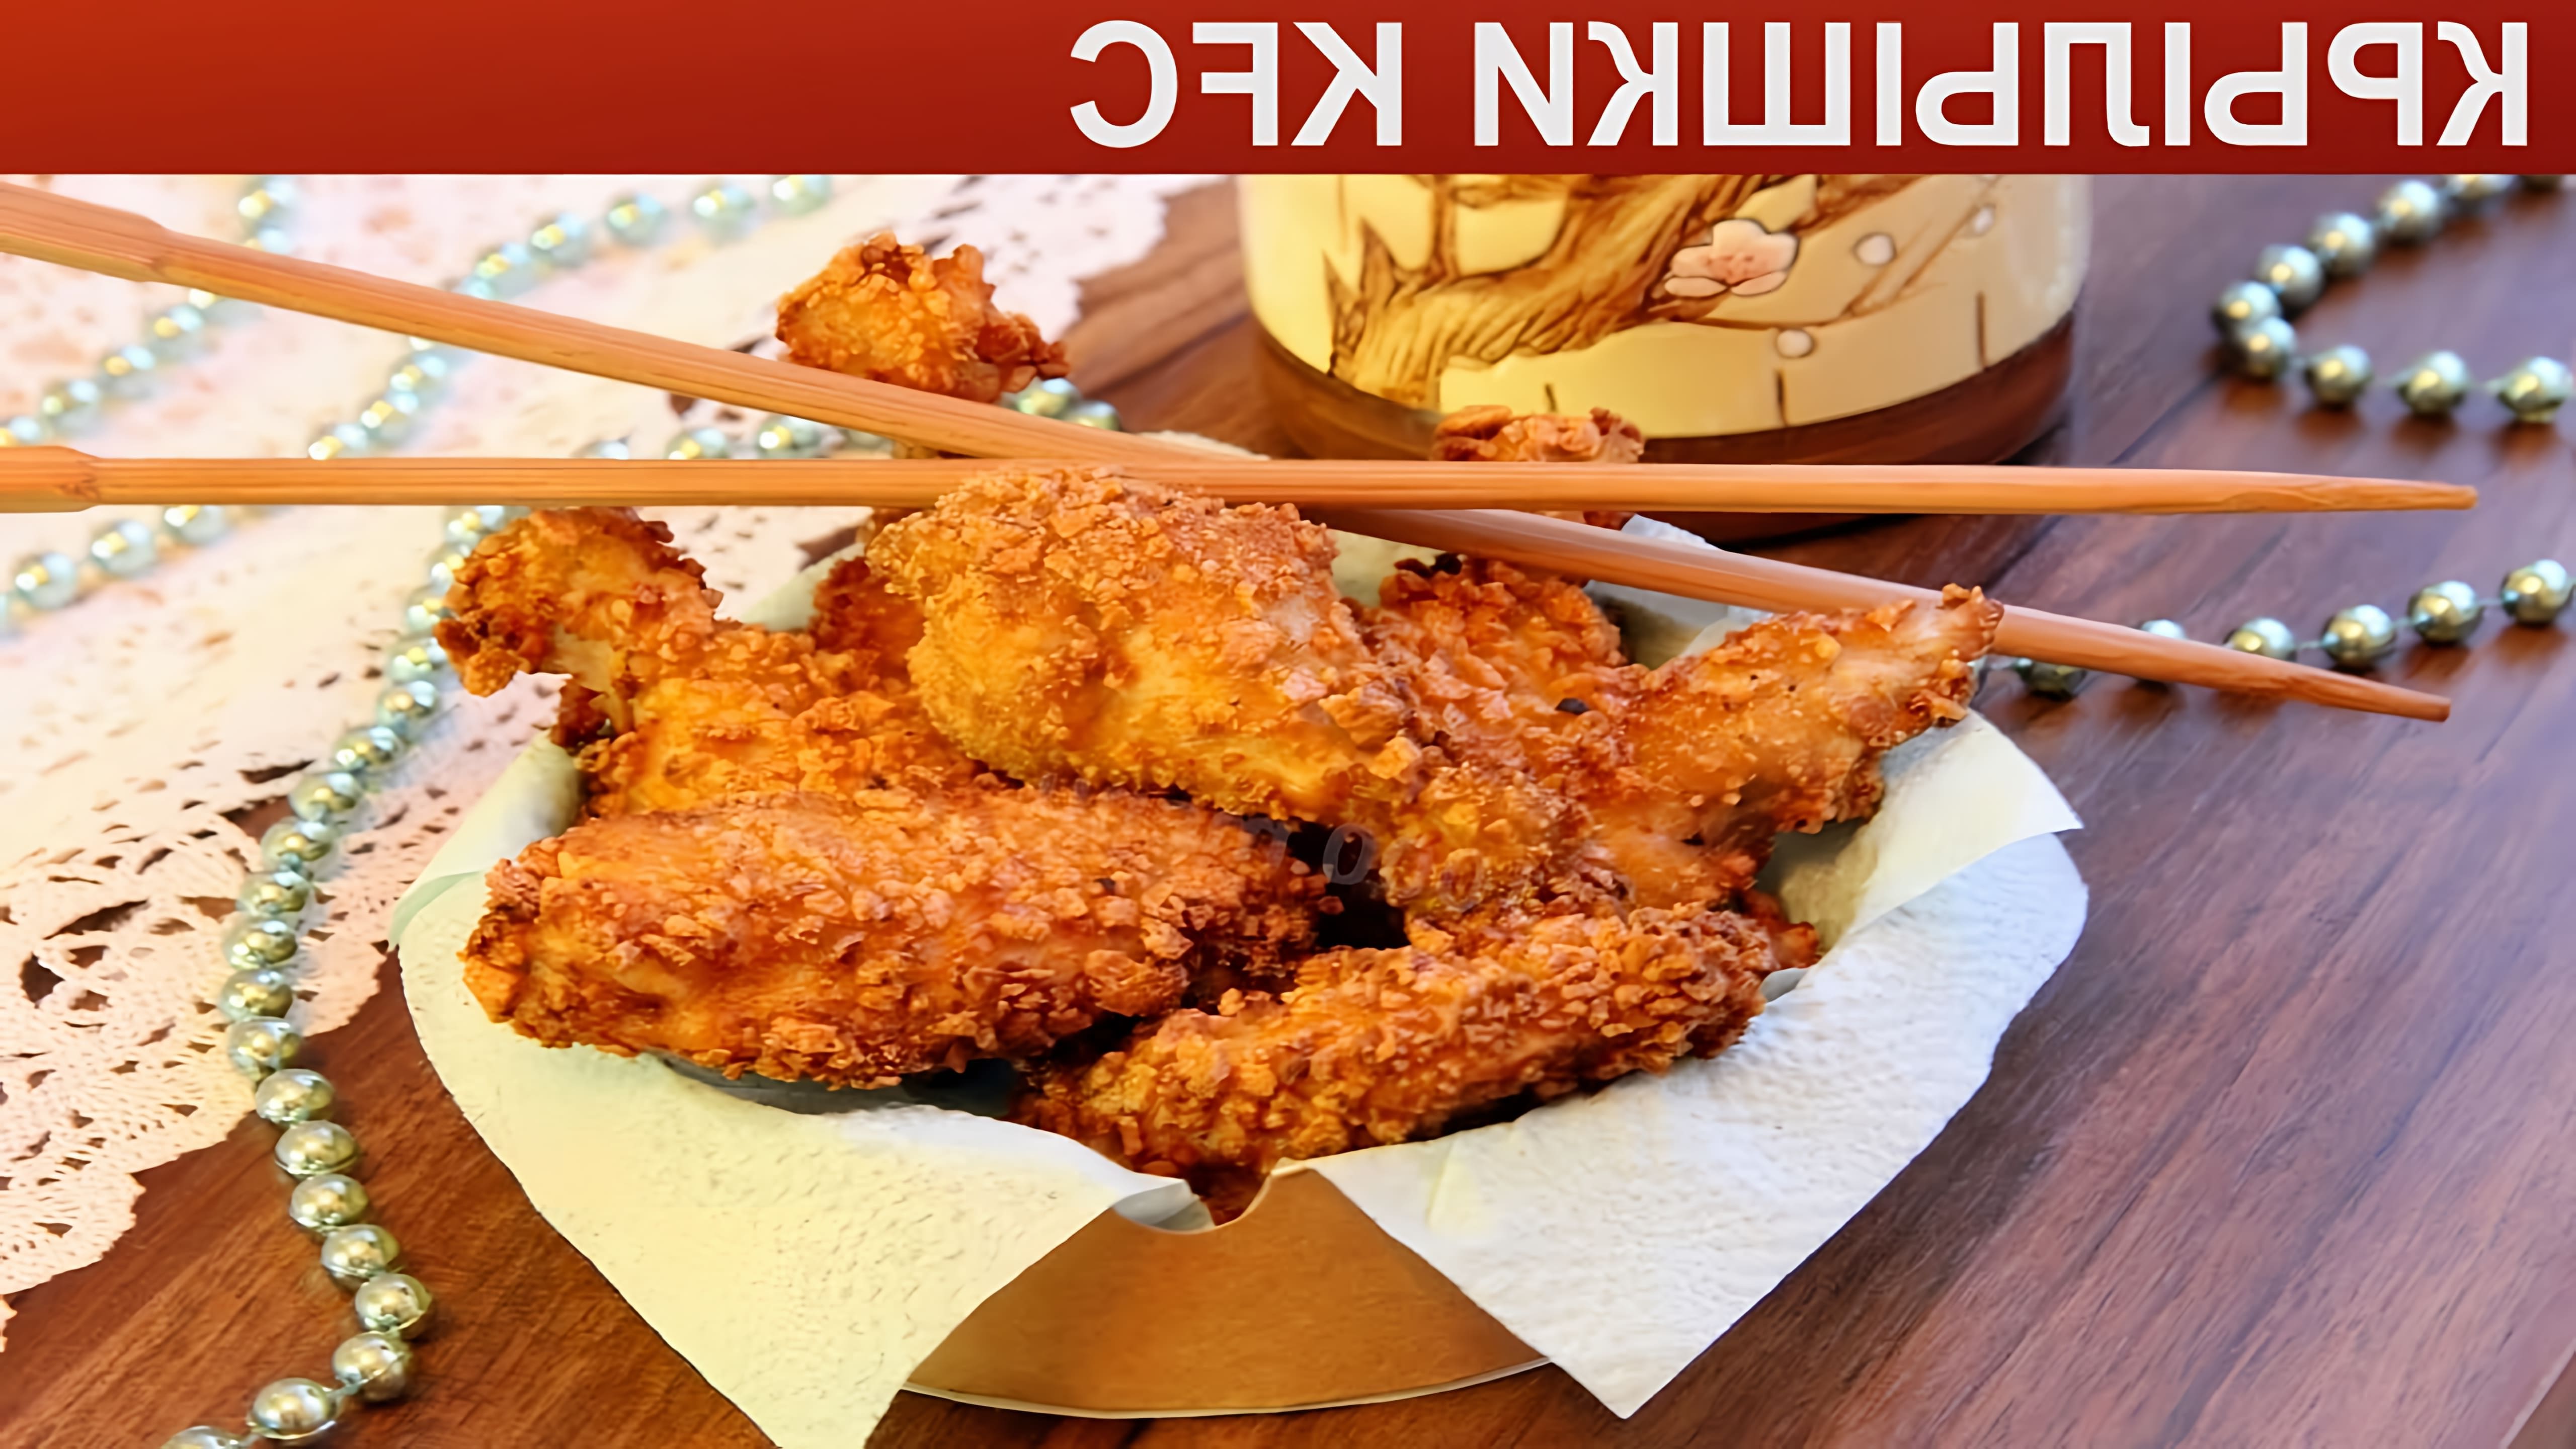 Любите крылышки как в KFC, давай приготовим их дома! Крылышки получатся такие же аппетитные, сочные и хрустящие. 